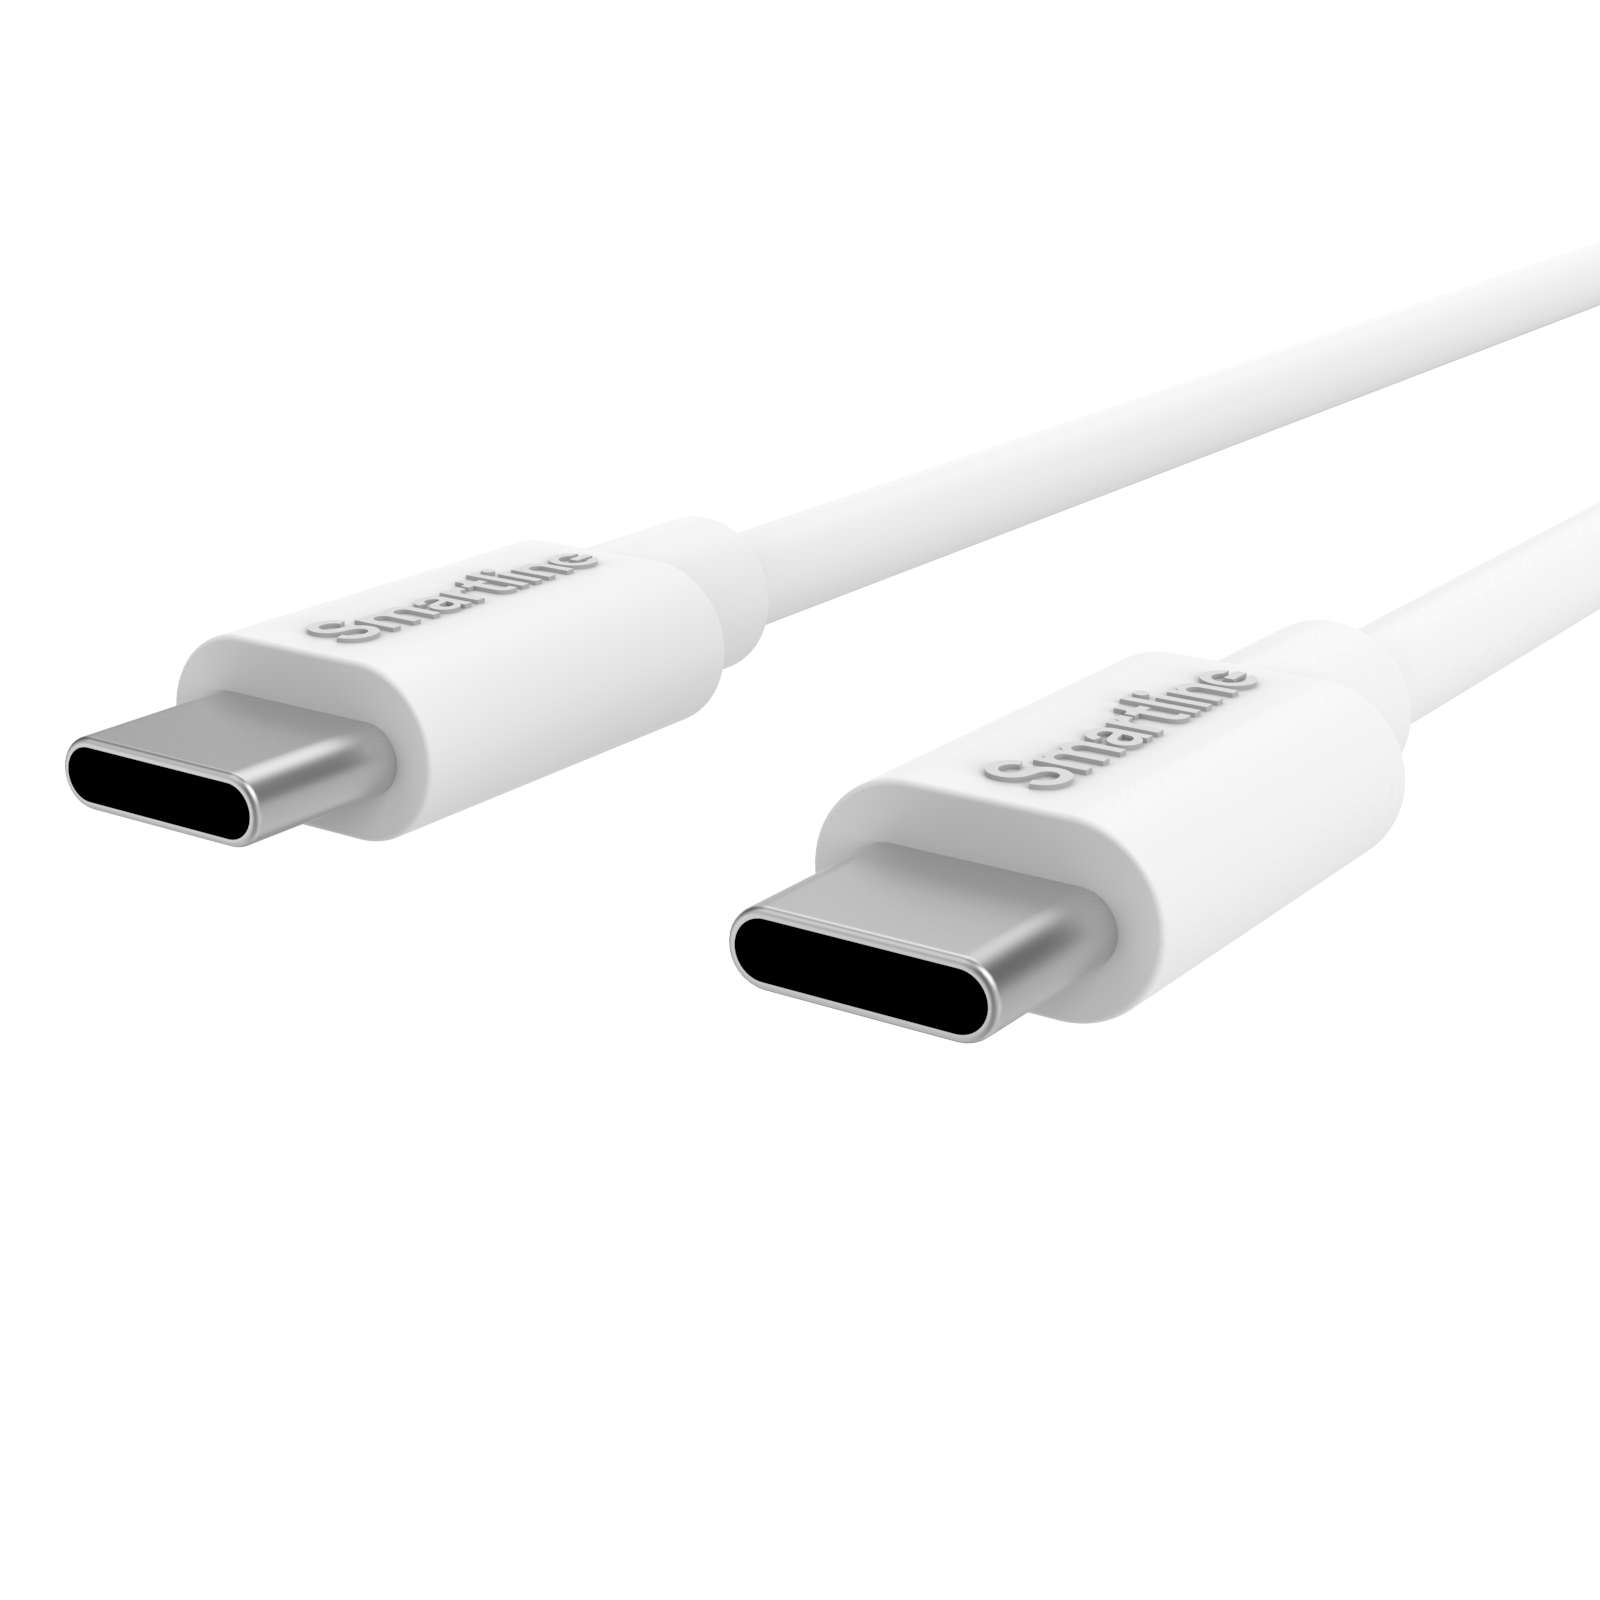 Cargador completo para Sony Xperia - Cable de 2m y cargador de pared USB-C - Smartline